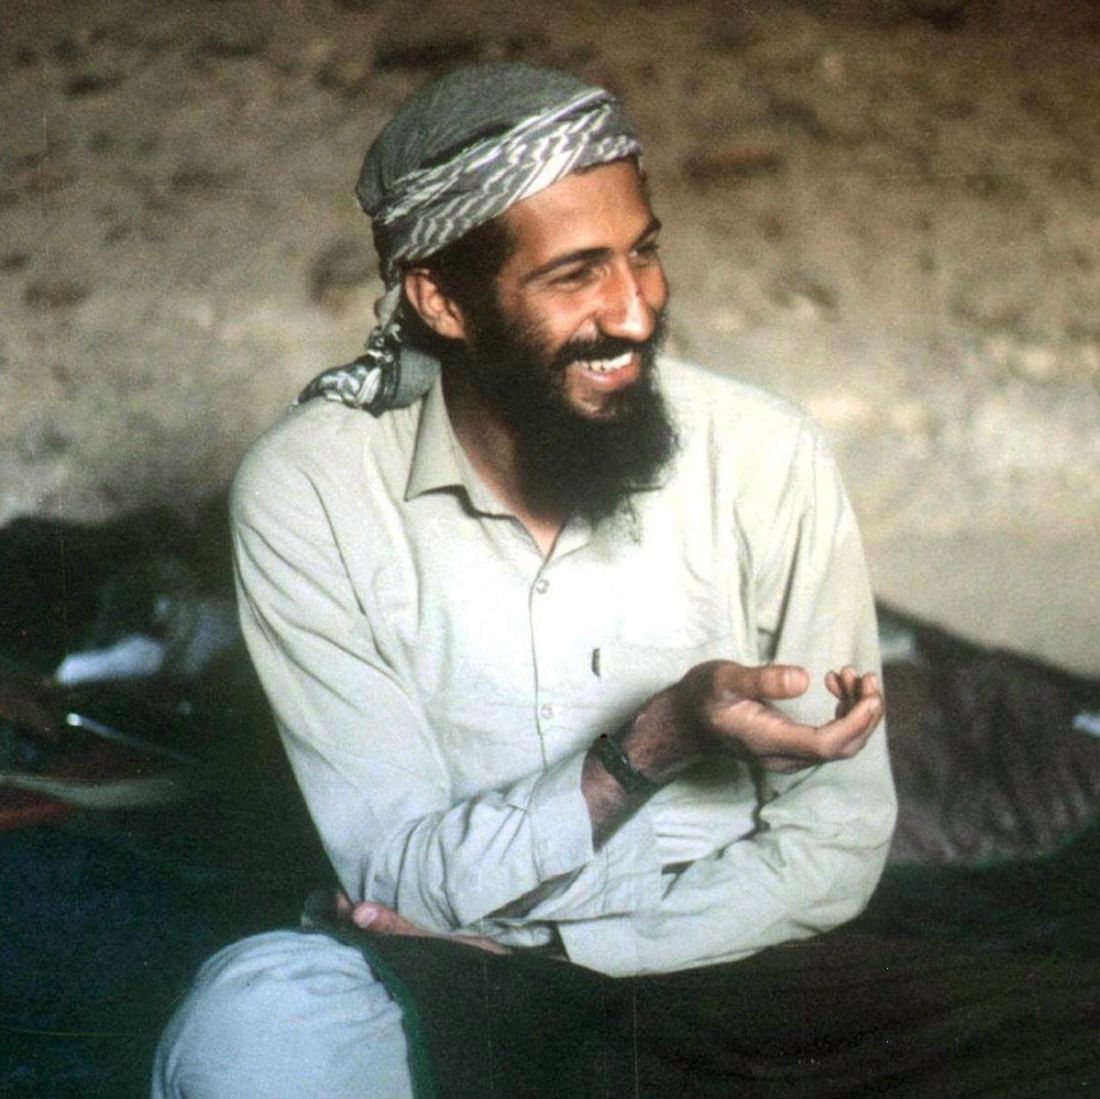 Осама бин Ладен водел скромен живот в почти мизерна обстановка